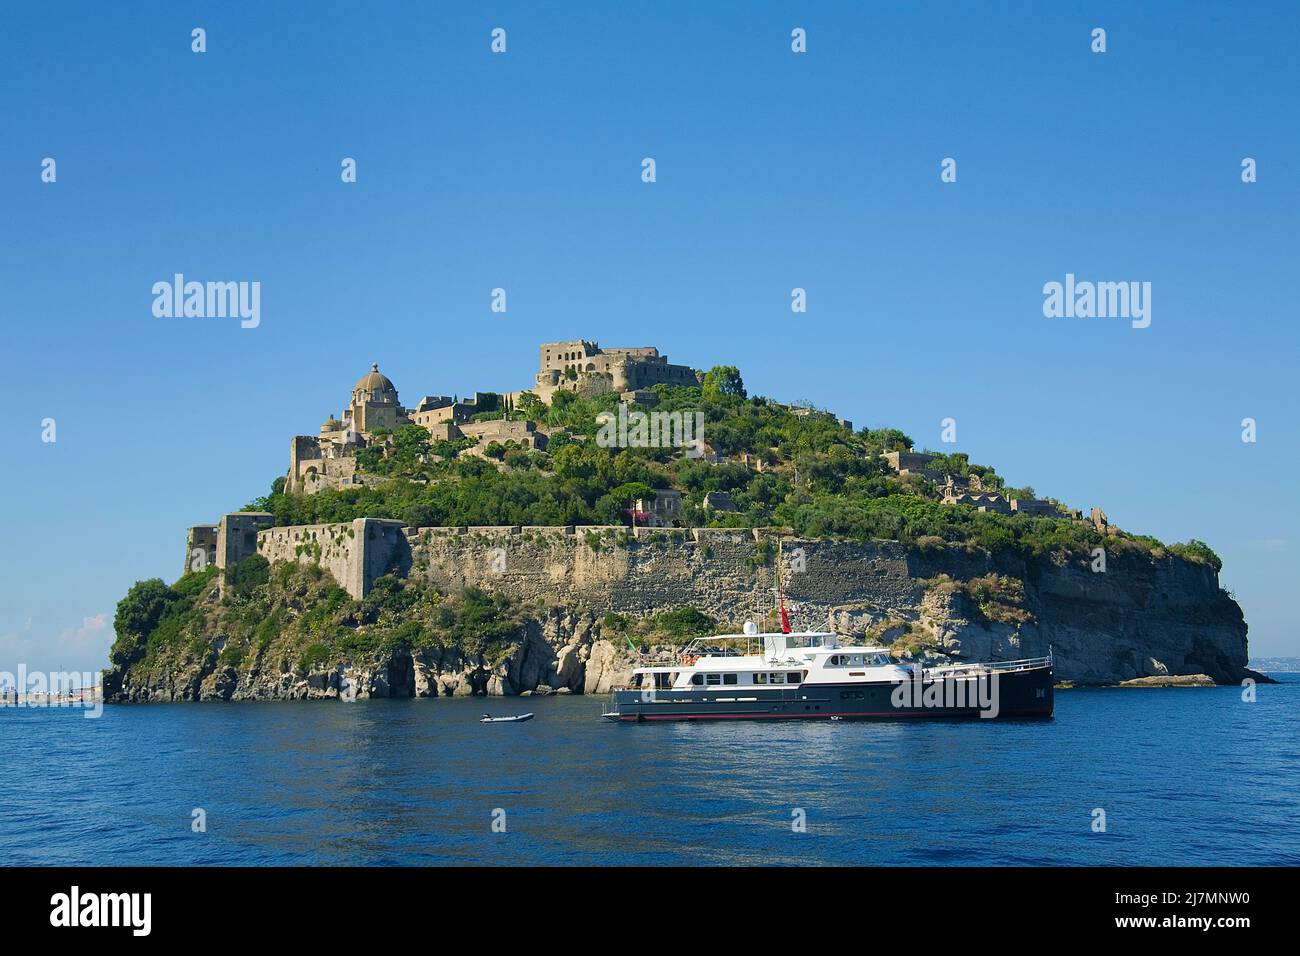 Castello Aragonese à l'île d'Ischia, Italie, mer Tyrrhénienne, mer Méditerranée Banque D'Images